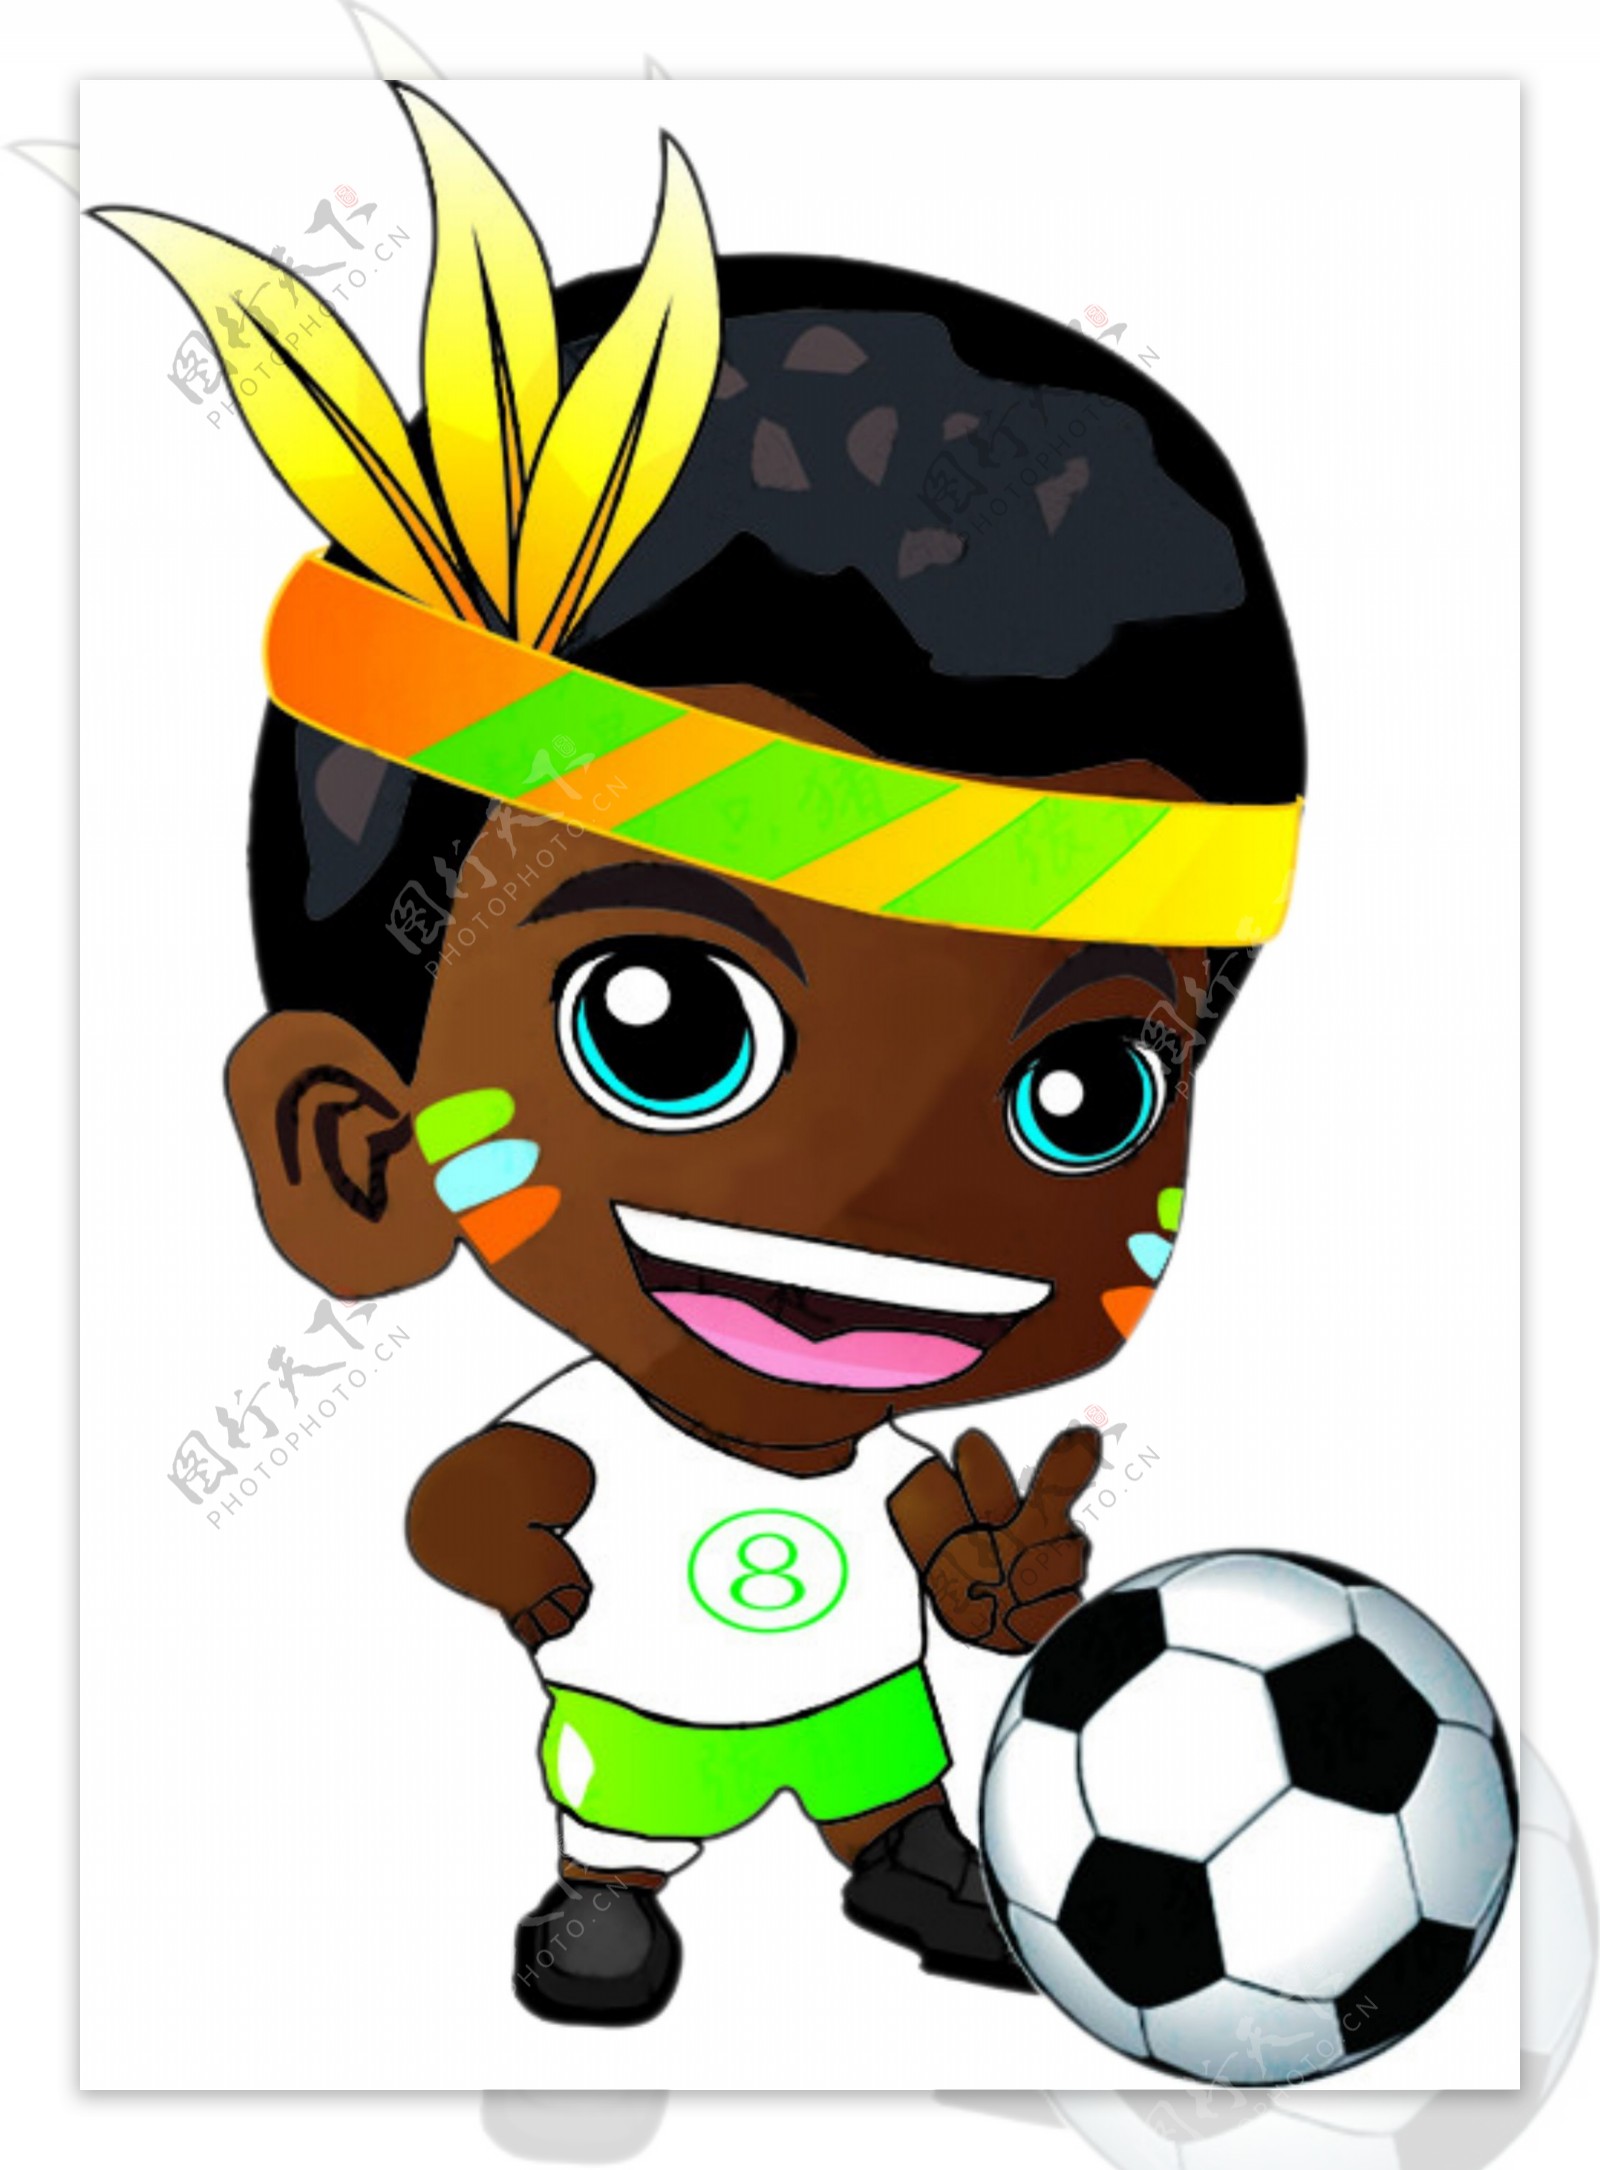 南非足球小子图片